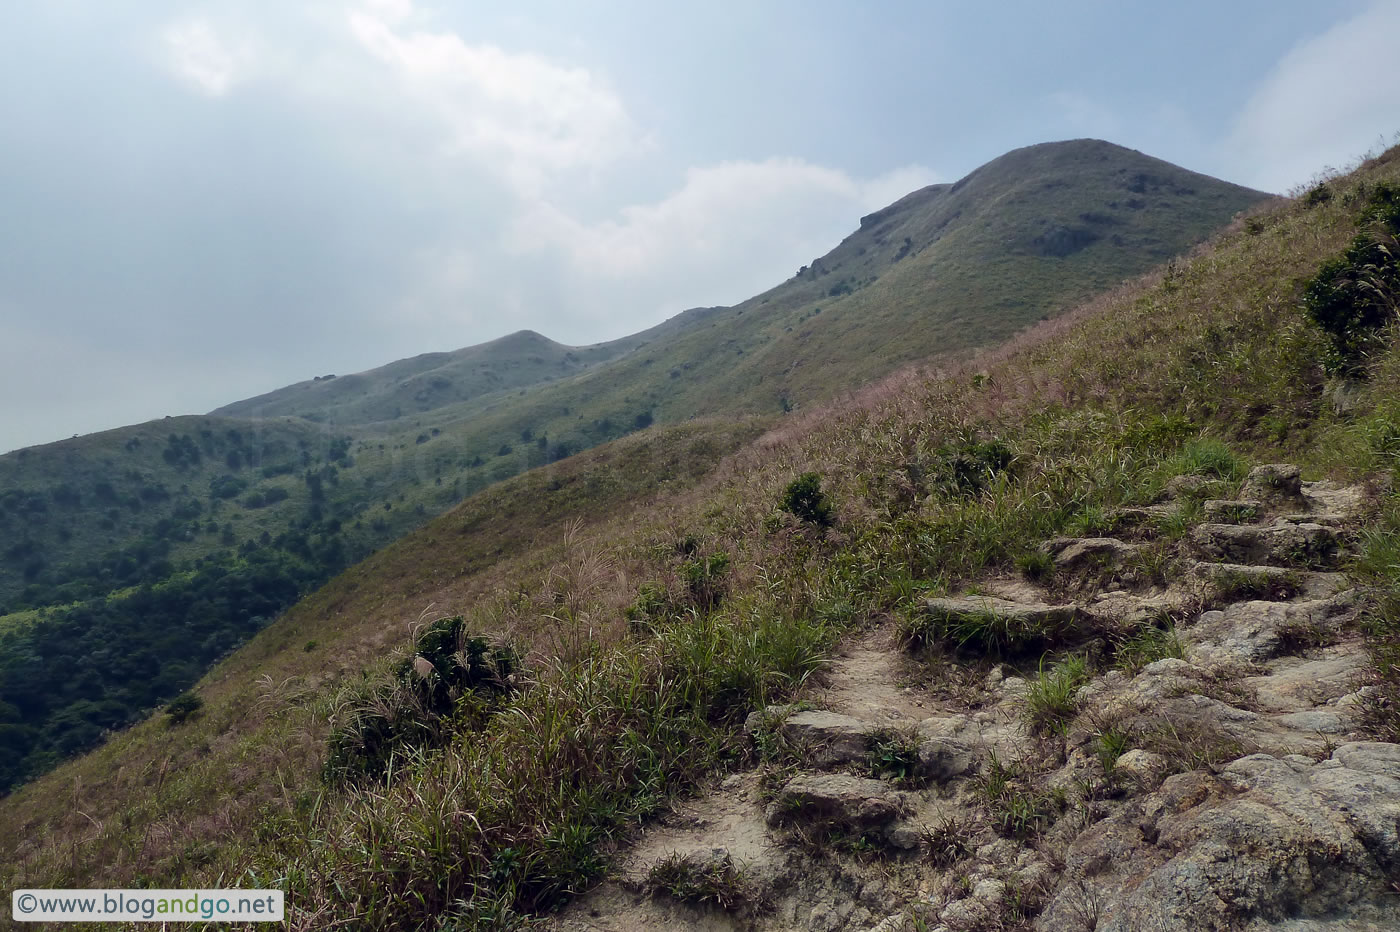 Launta Trail - Tai Tung Shan in view